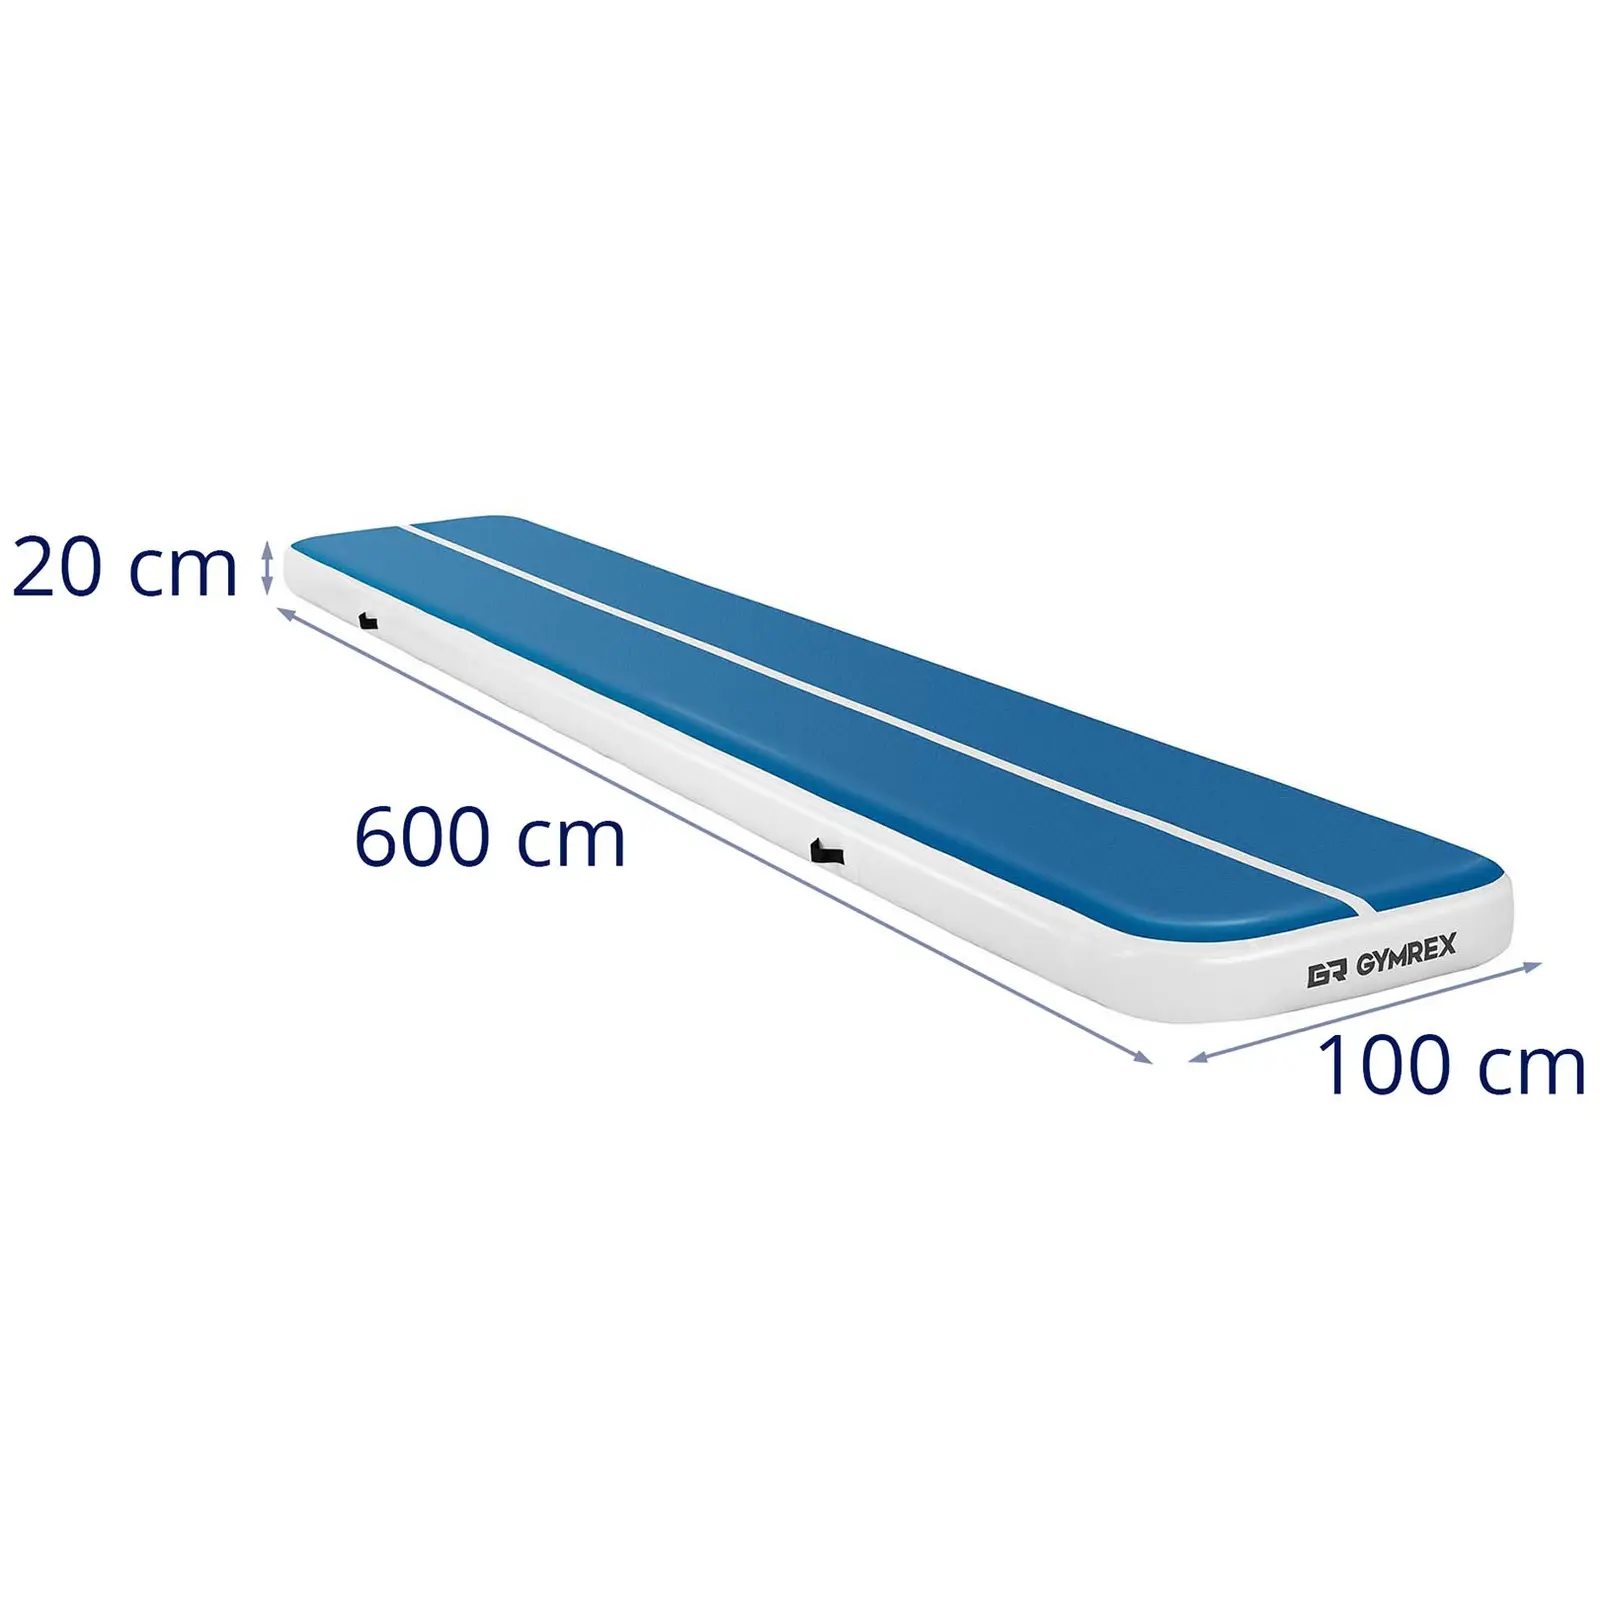 Colchoneta de gimnasia - 600 x 100 x 20 cm - 300 kg - azul/blanco